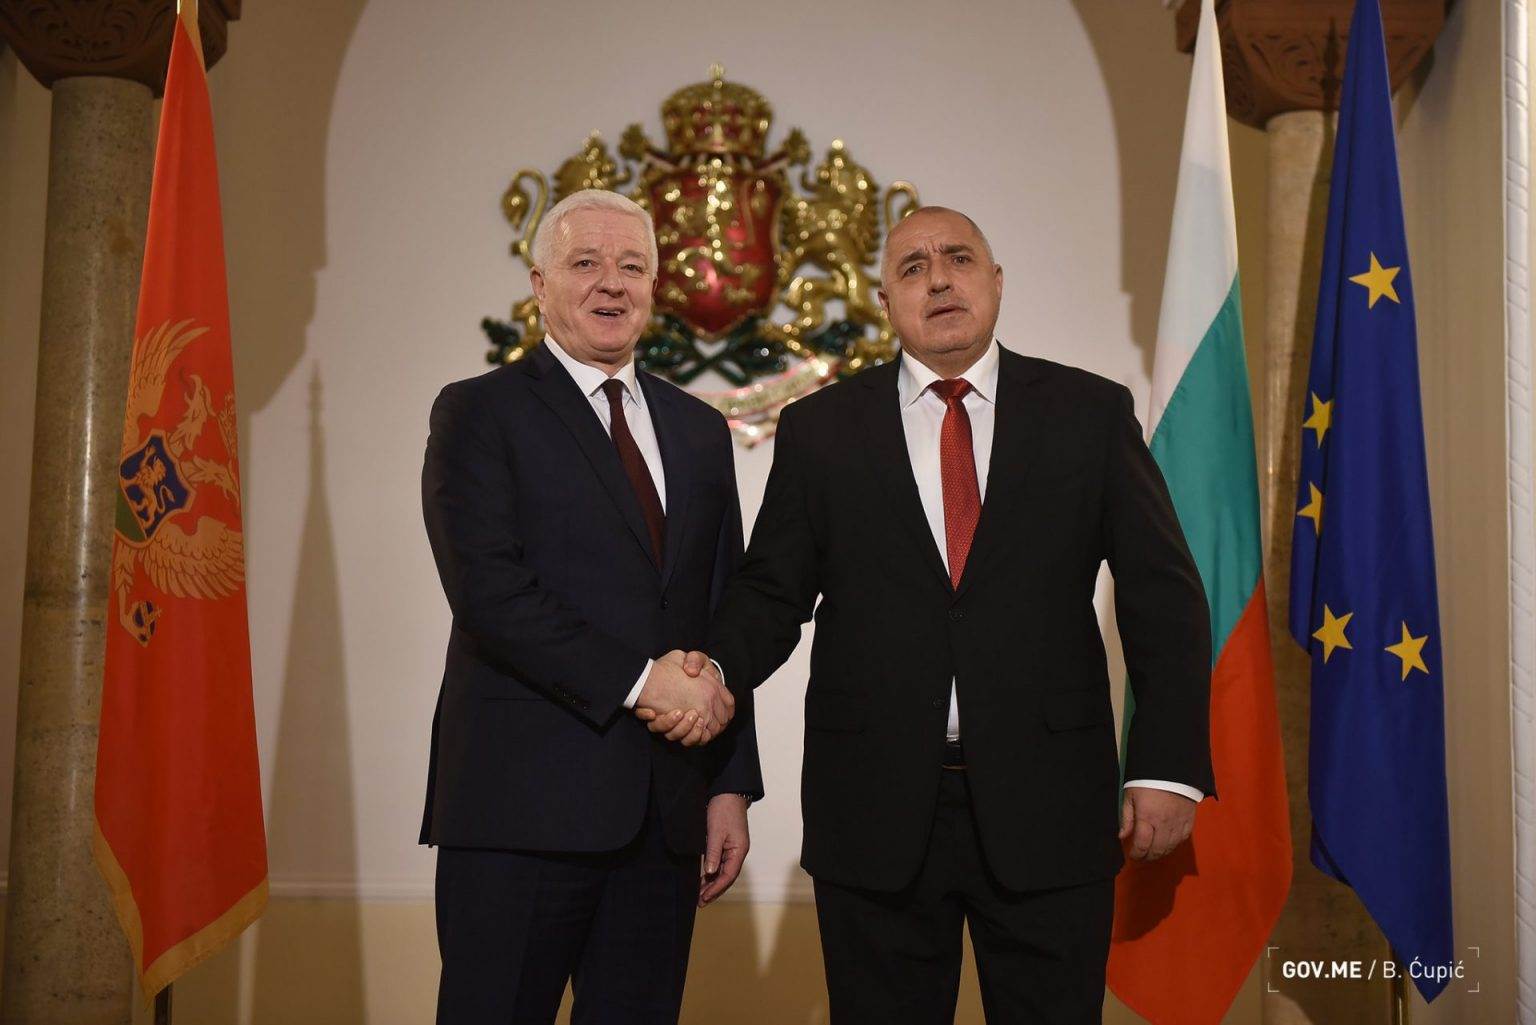  Bugarski premijer osudio Dodika i podržao Crnu Goru 